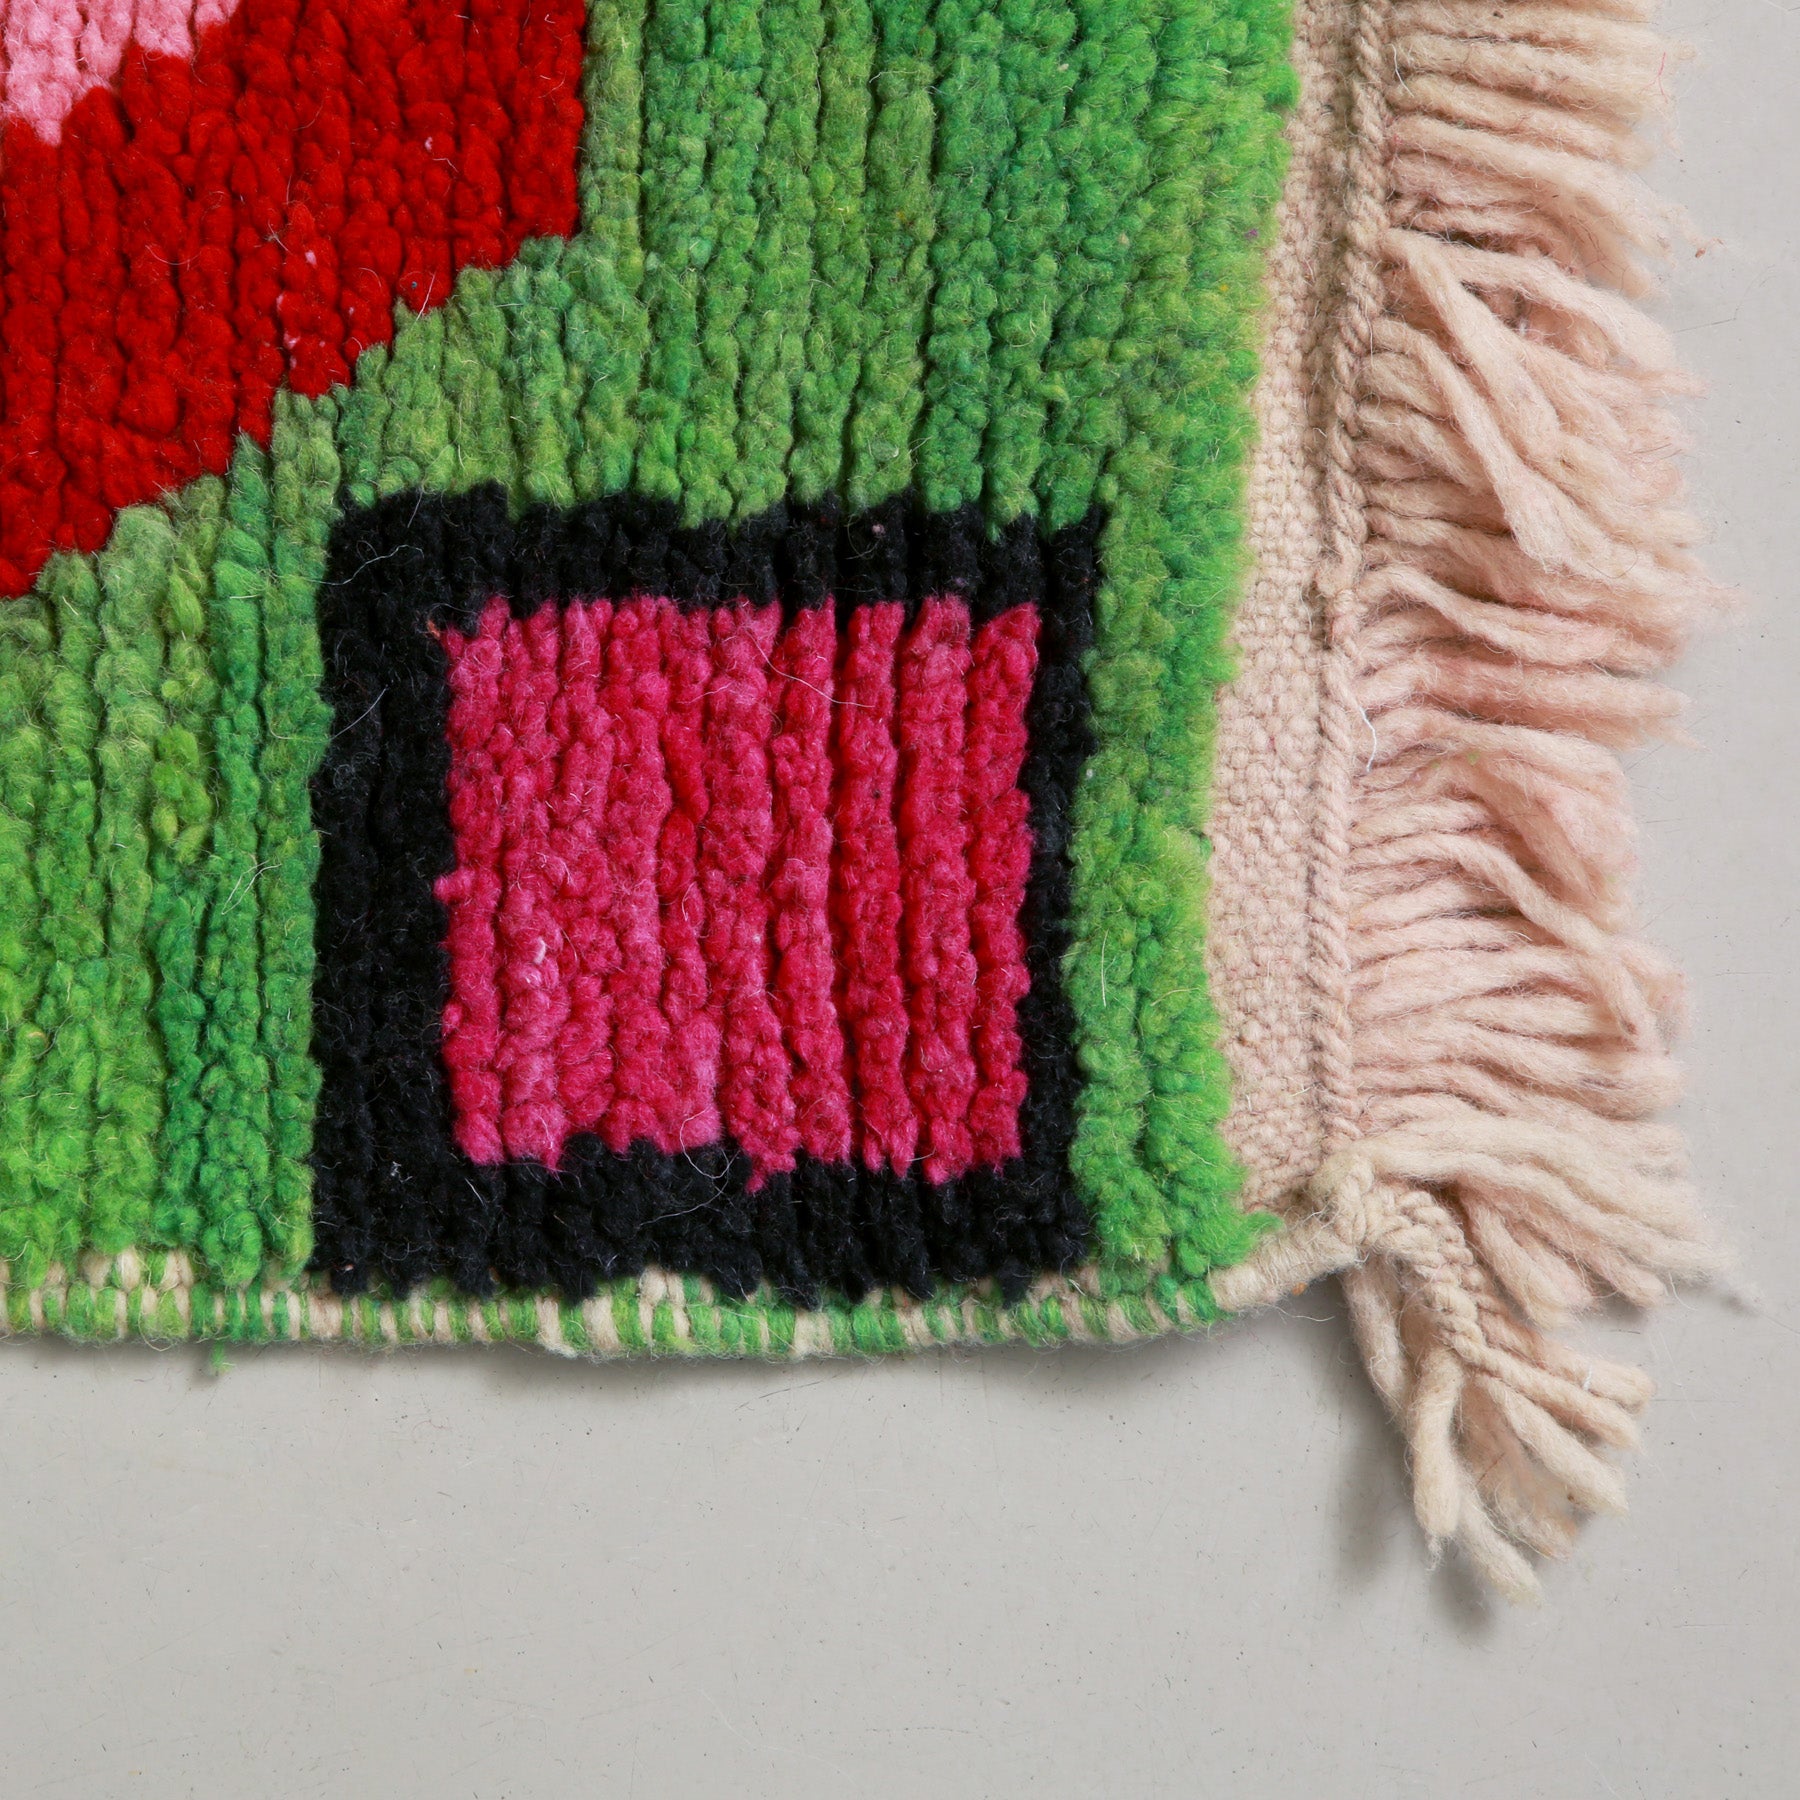 angolo di un tappeto con lana veder e grande quadrato fucsia con bordo nero. la frangia e in lana bianca